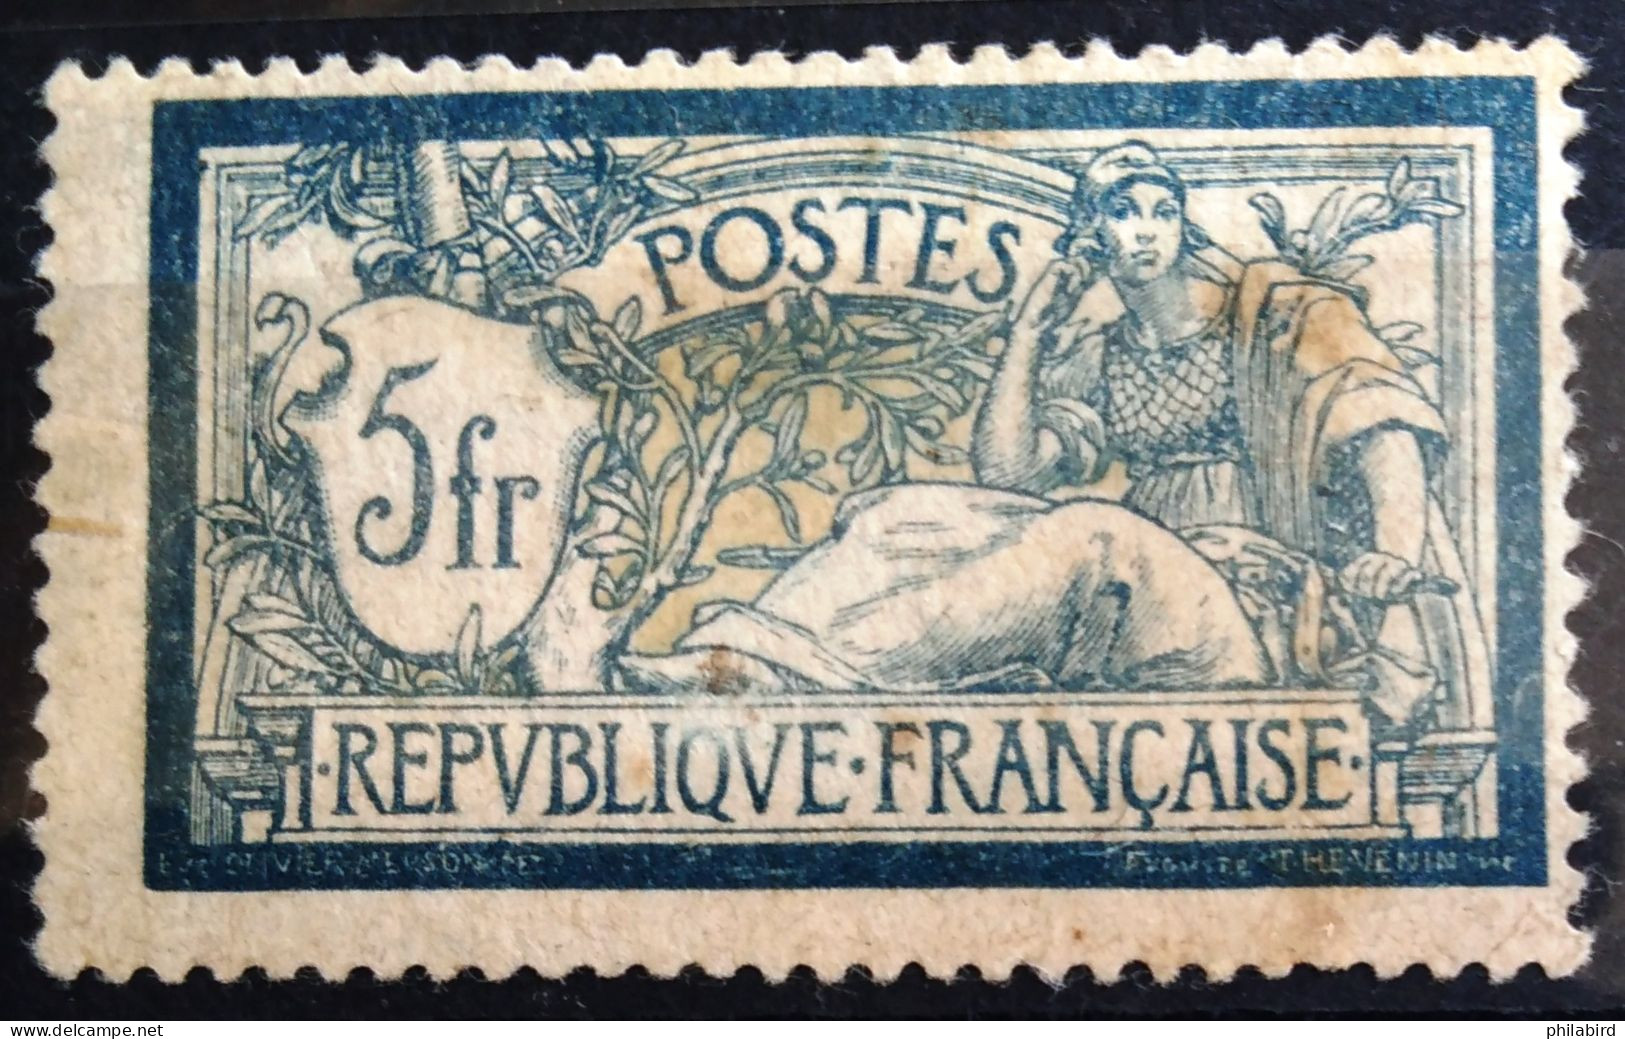 FRANCE                           N° 123                     NEUF*          Cote : 100 € - Unused Stamps